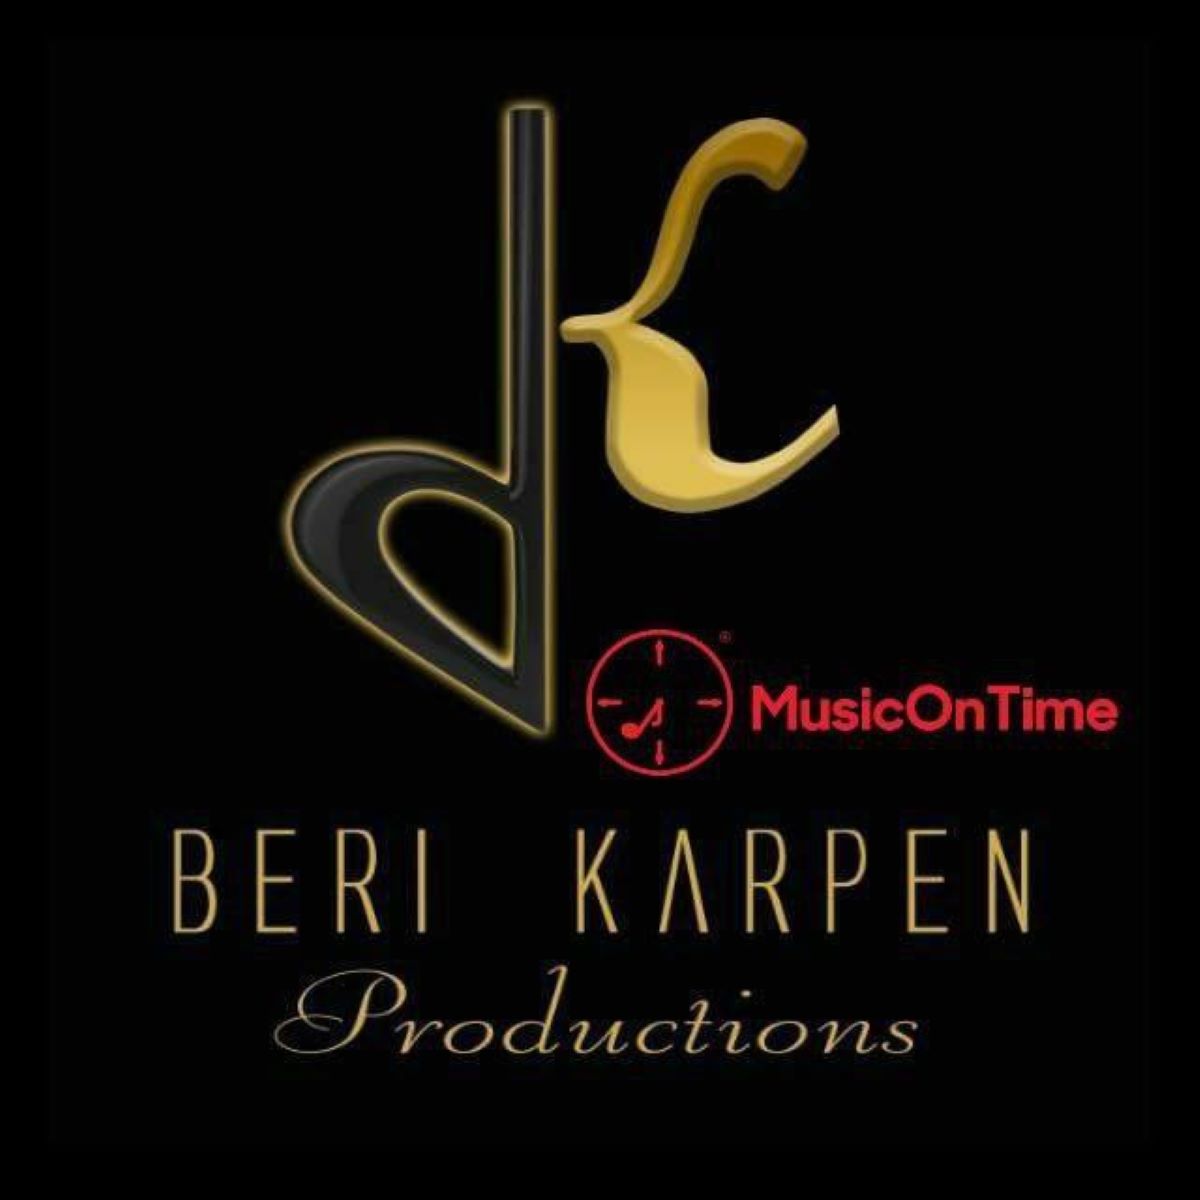 Shea Berko & Beri Karpen Production - Jan. 13 '22 Schnitzler (Wedding)